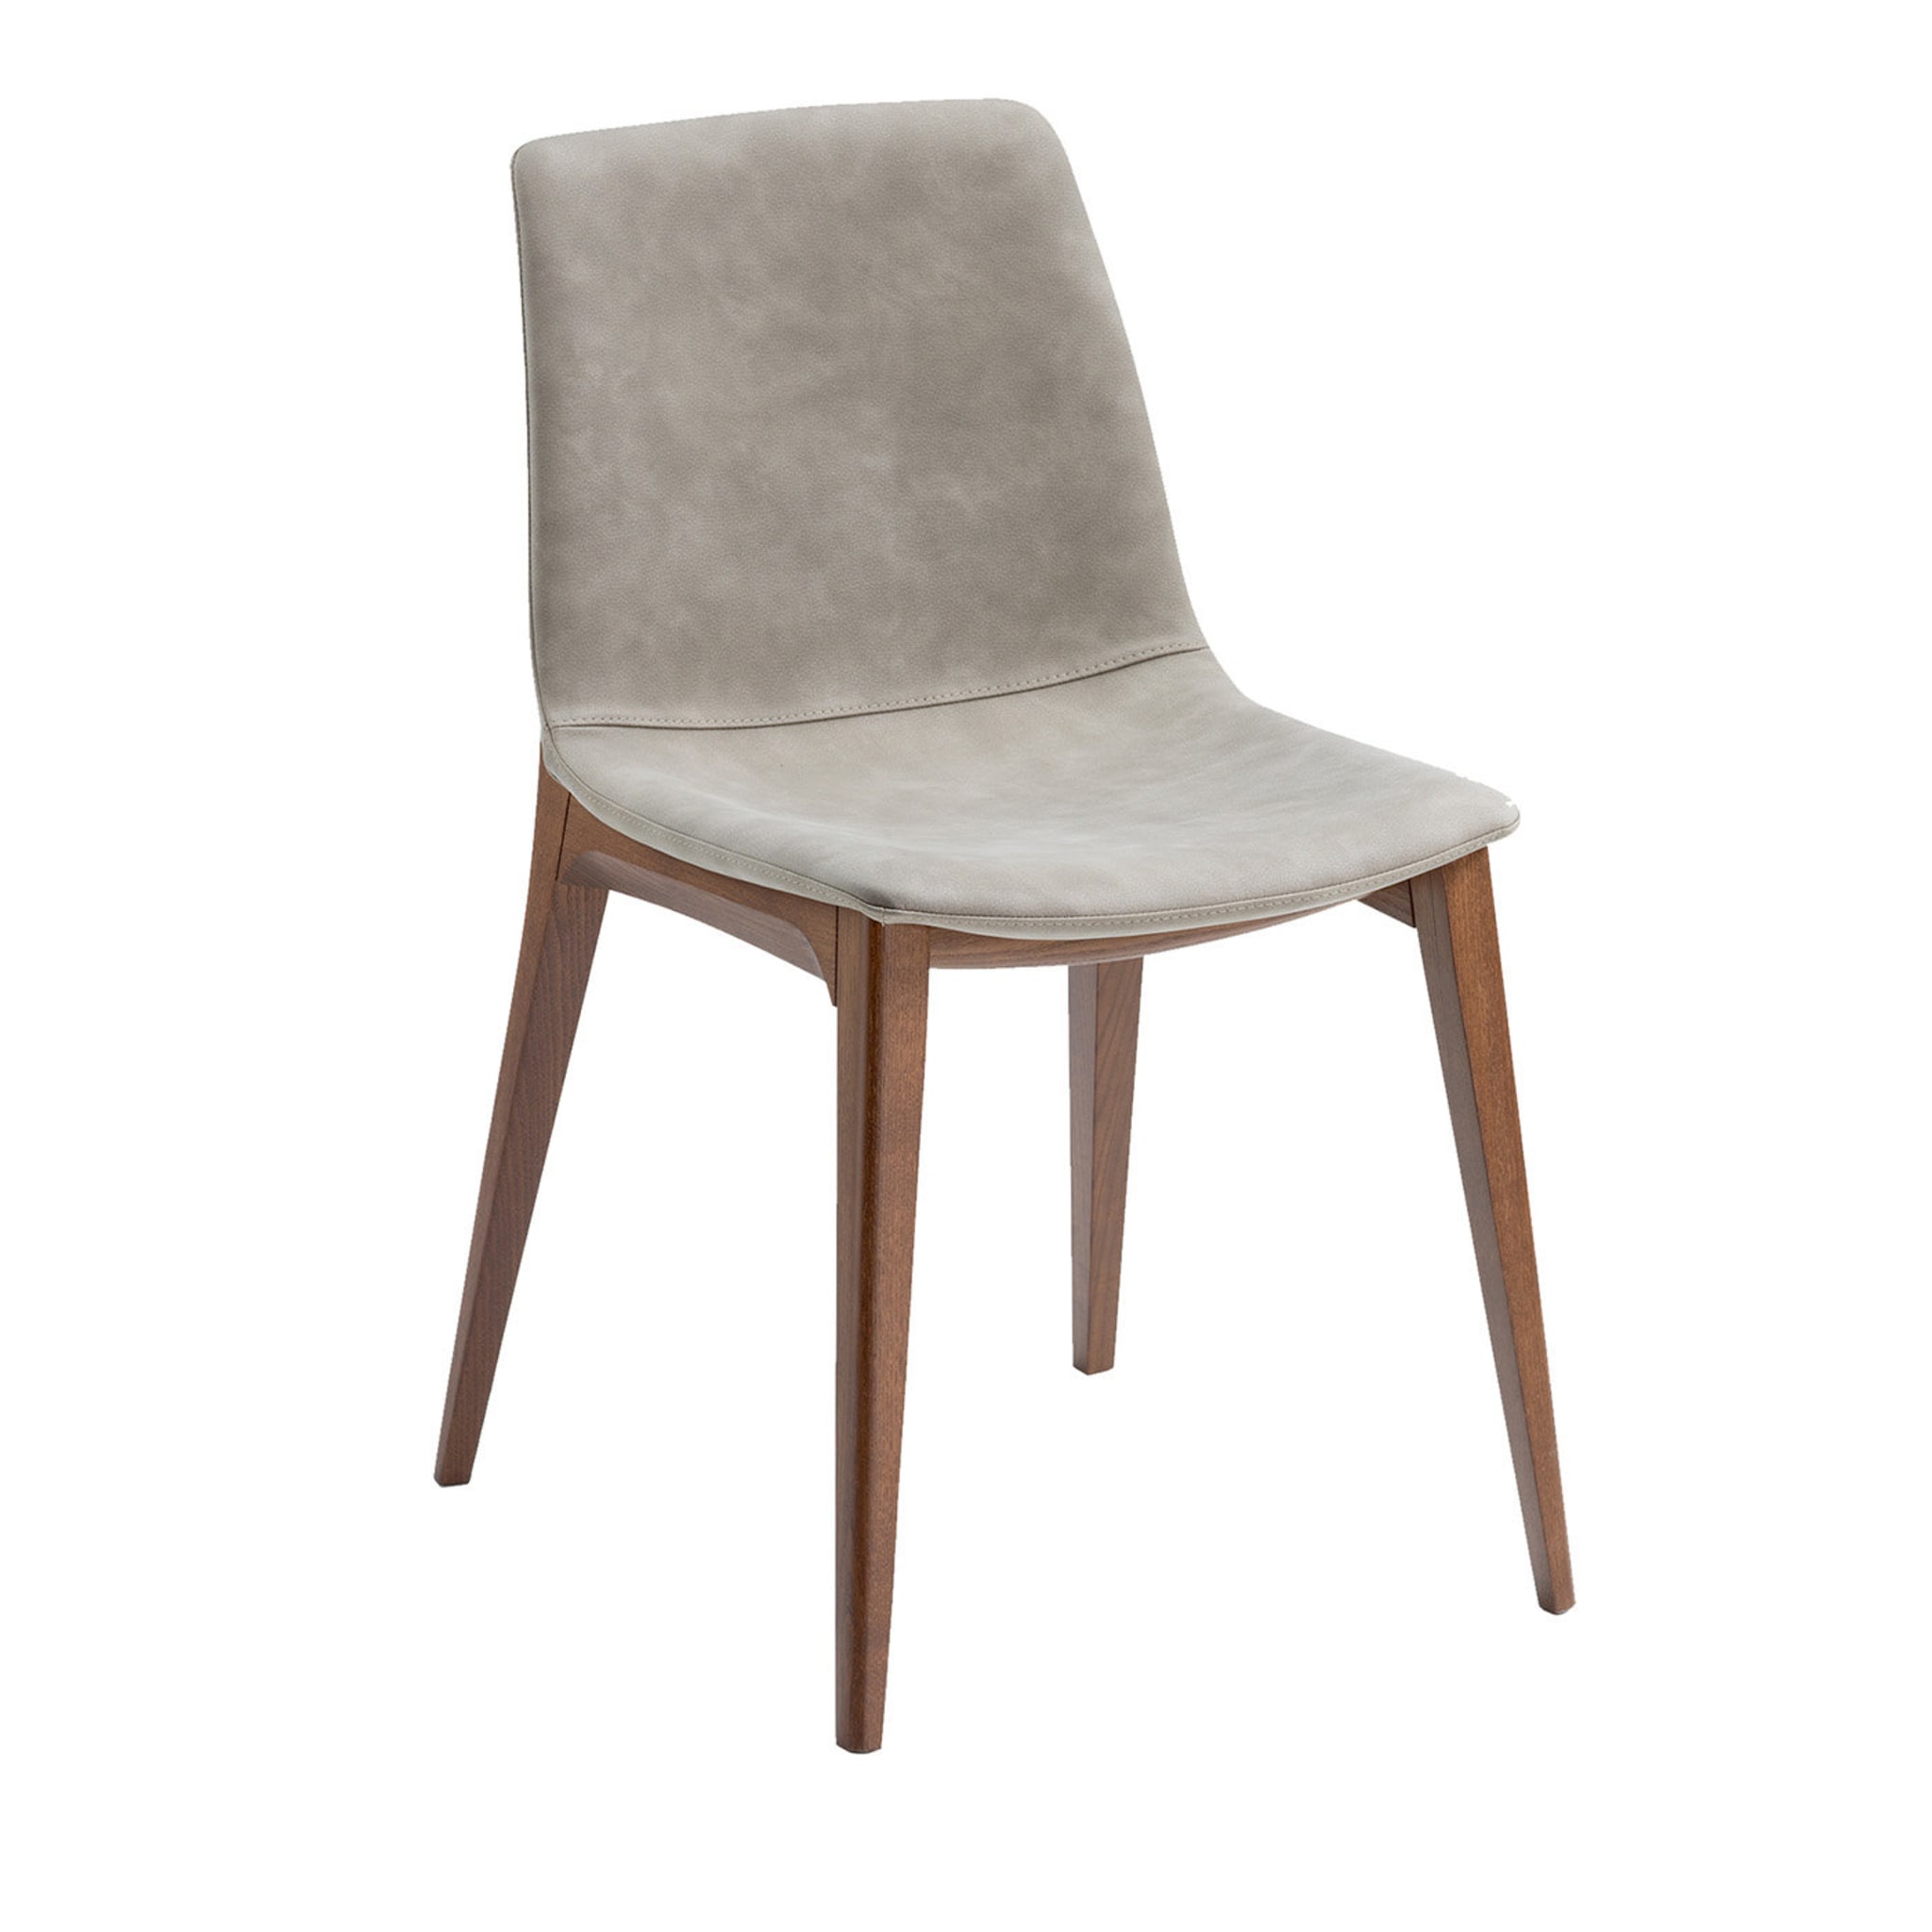 Bassano Clay Chair - Main view